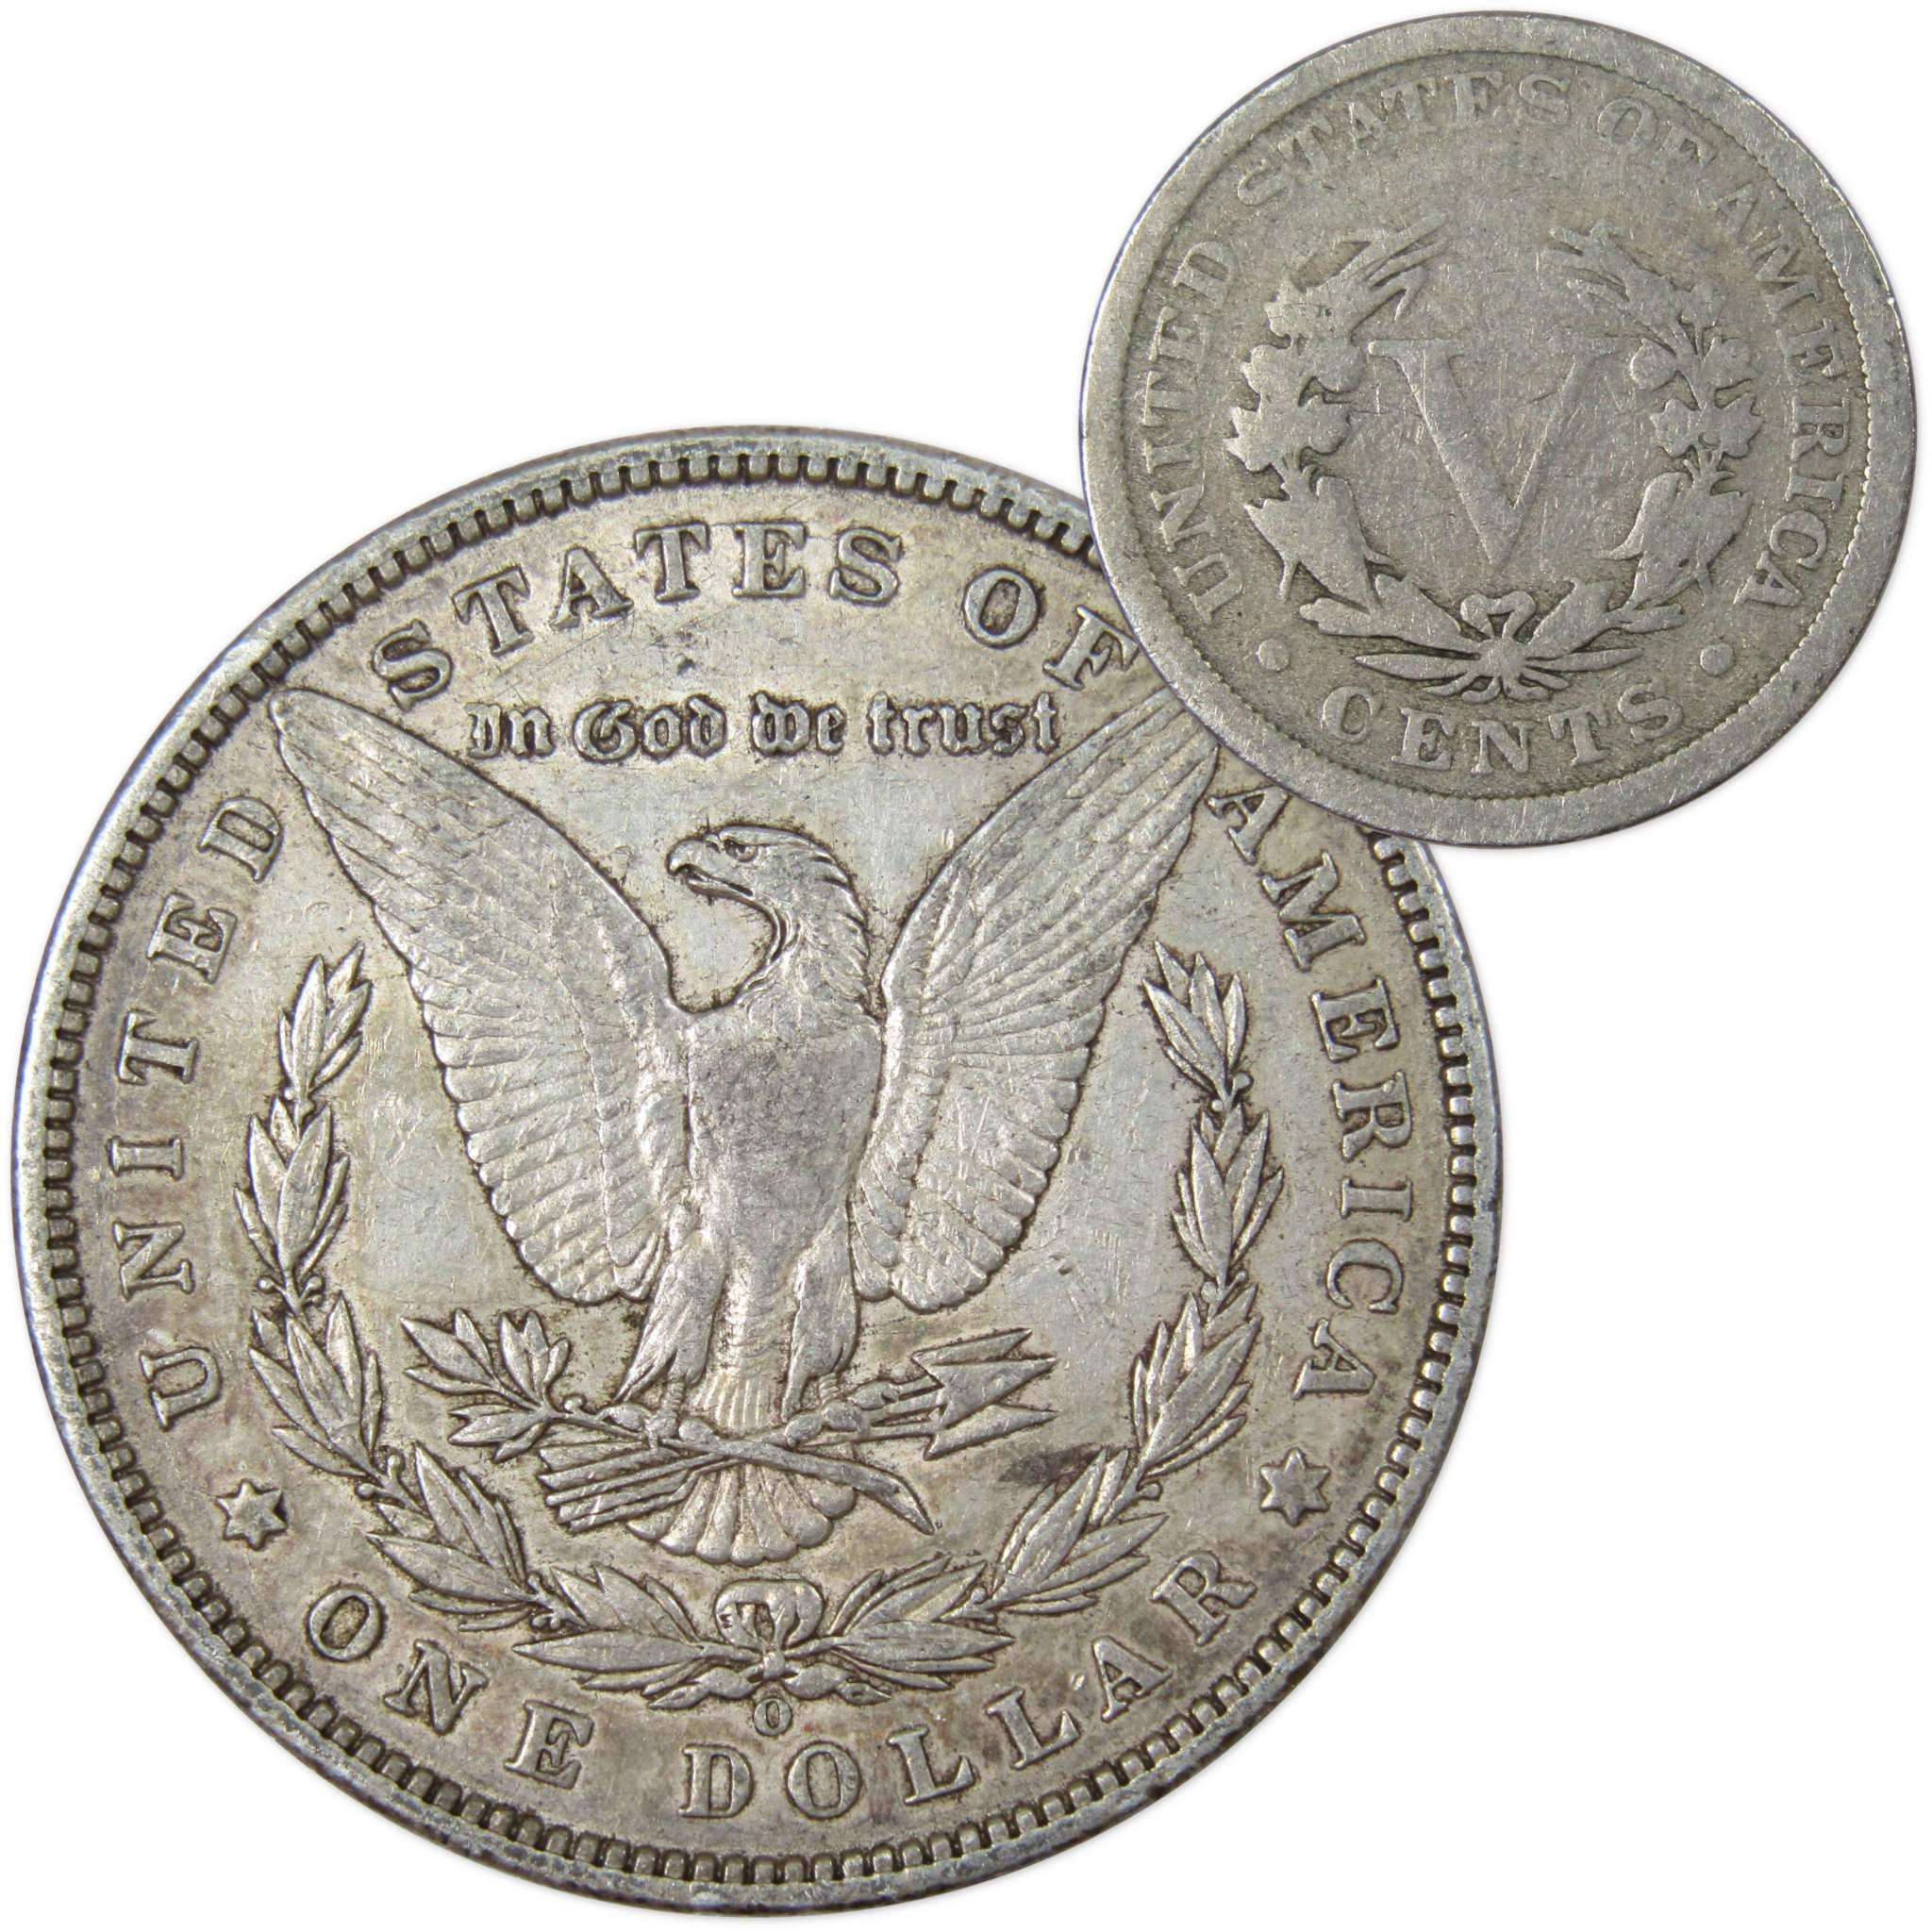 1897 O Morgan Dollar VF Very Fine 90% Silver with 1907 Liberty Nickel G Good - Morgan coin - Morgan silver dollar - Morgan silver dollar for sale - Profile Coins &amp; Collectibles